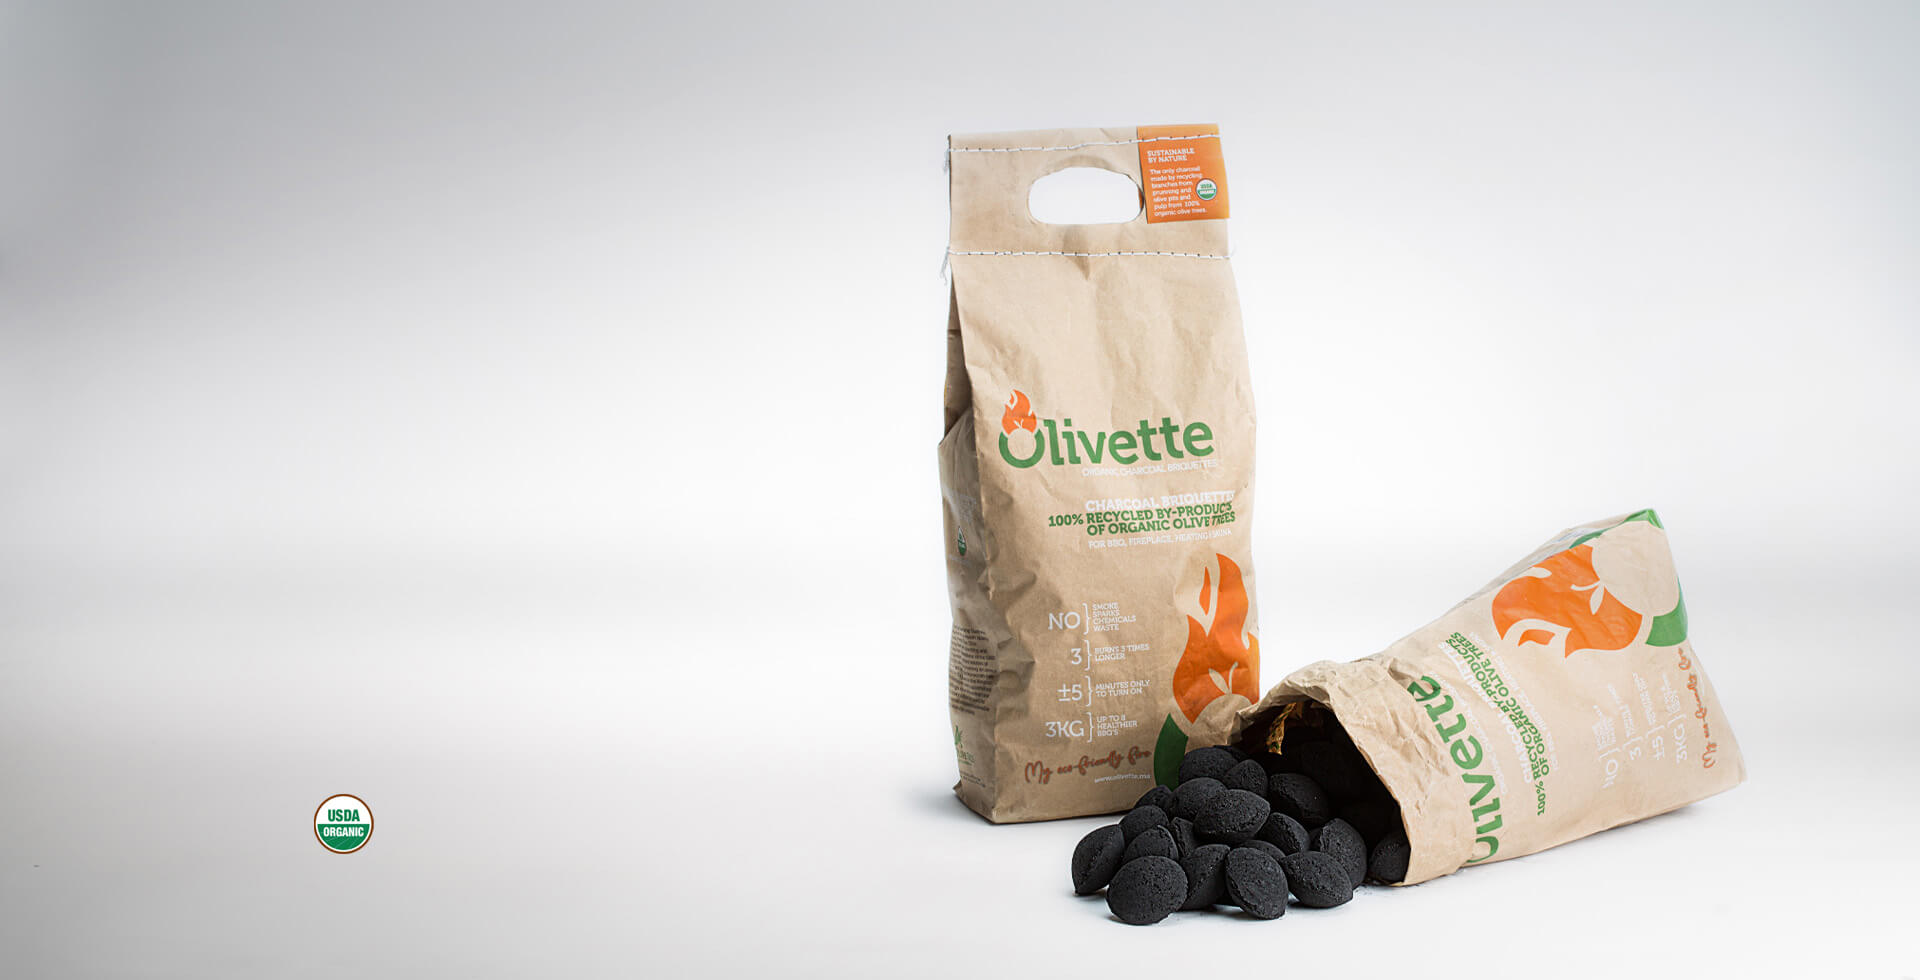 Olivette Organic charcoal briquettes